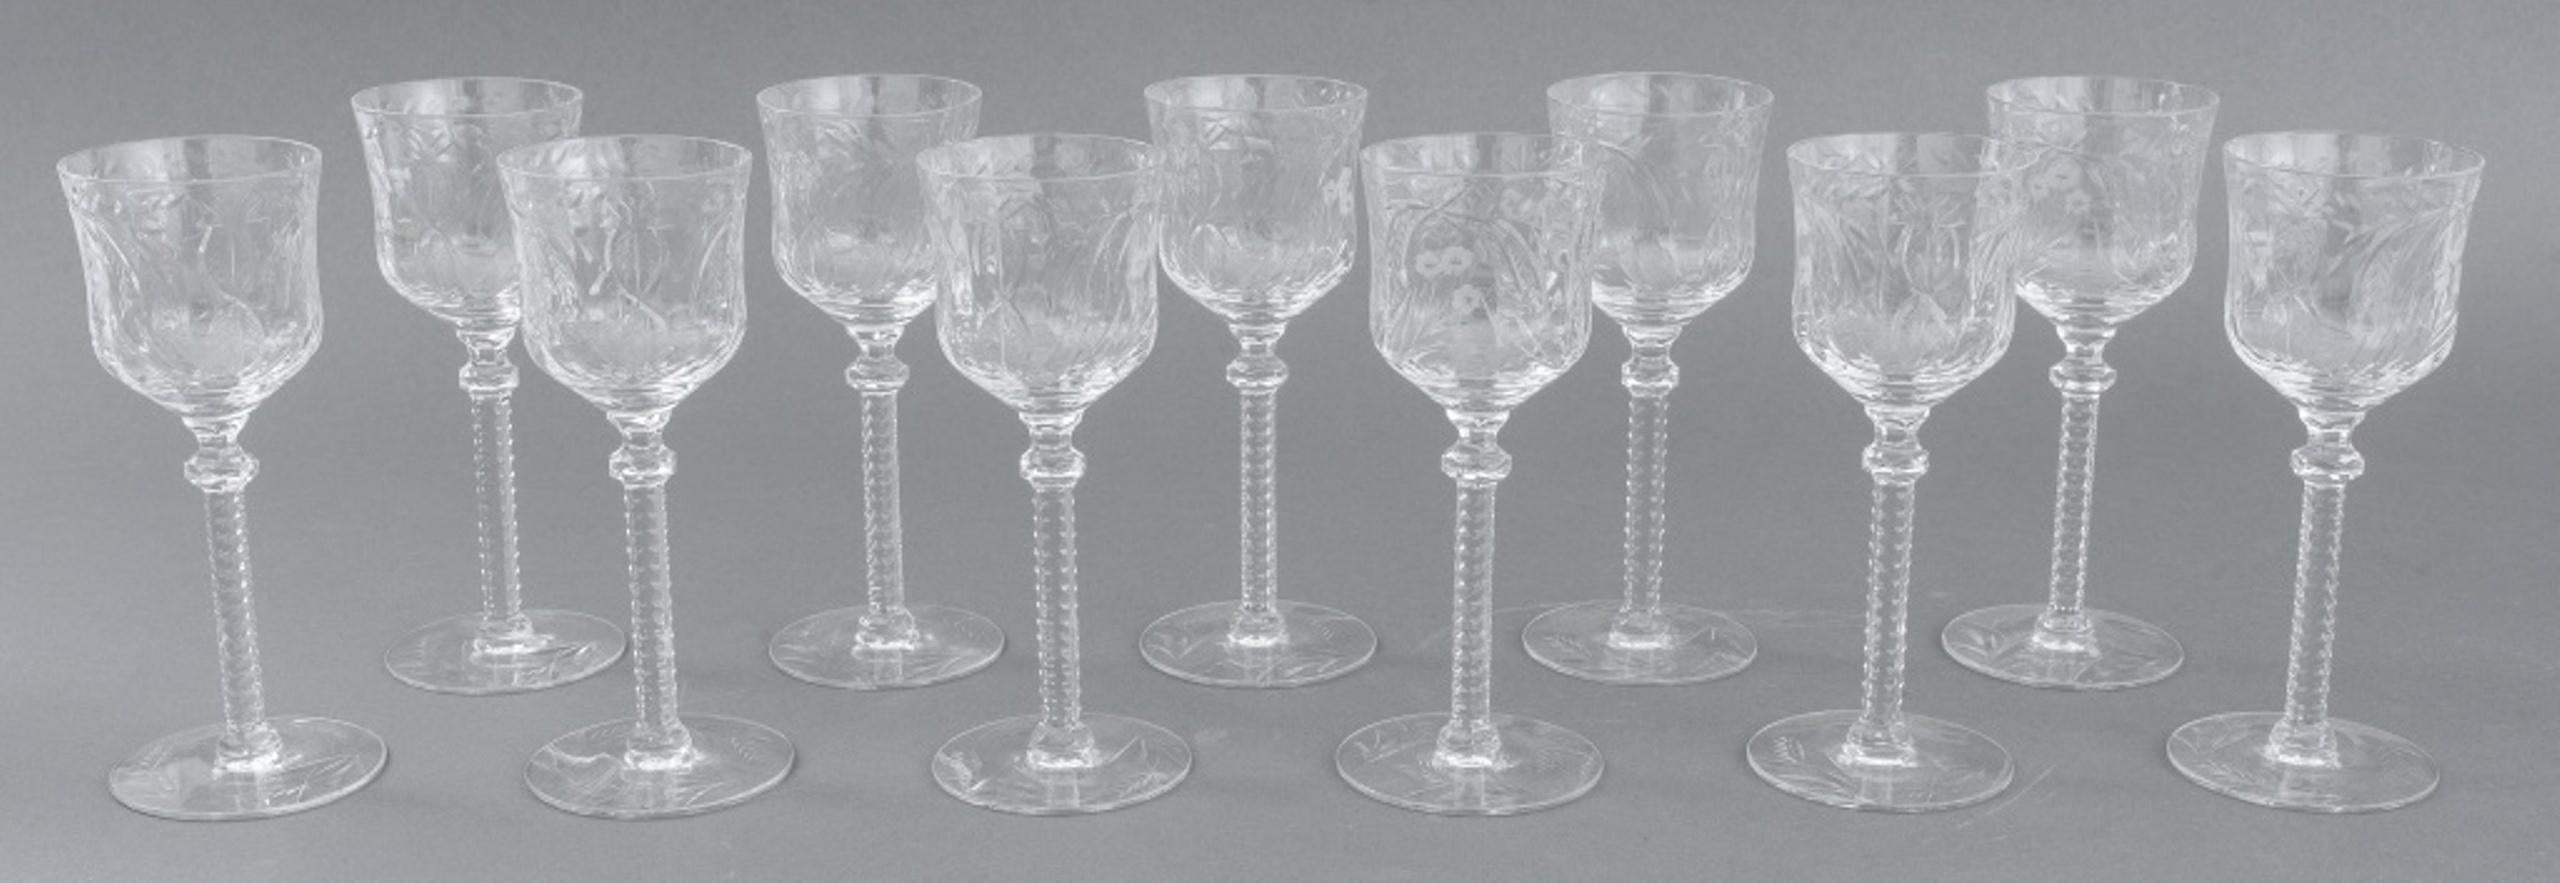 Groupe de verres en cristal taillé Libbey Rock Sharpe avec motifs floraux et ananas comprenant (11) onze coupes à champagne, (16) verres à vin, (6) six grands verres à vin, (11) onze verres à sherry et (8) huit verres à cordial, apparemment non